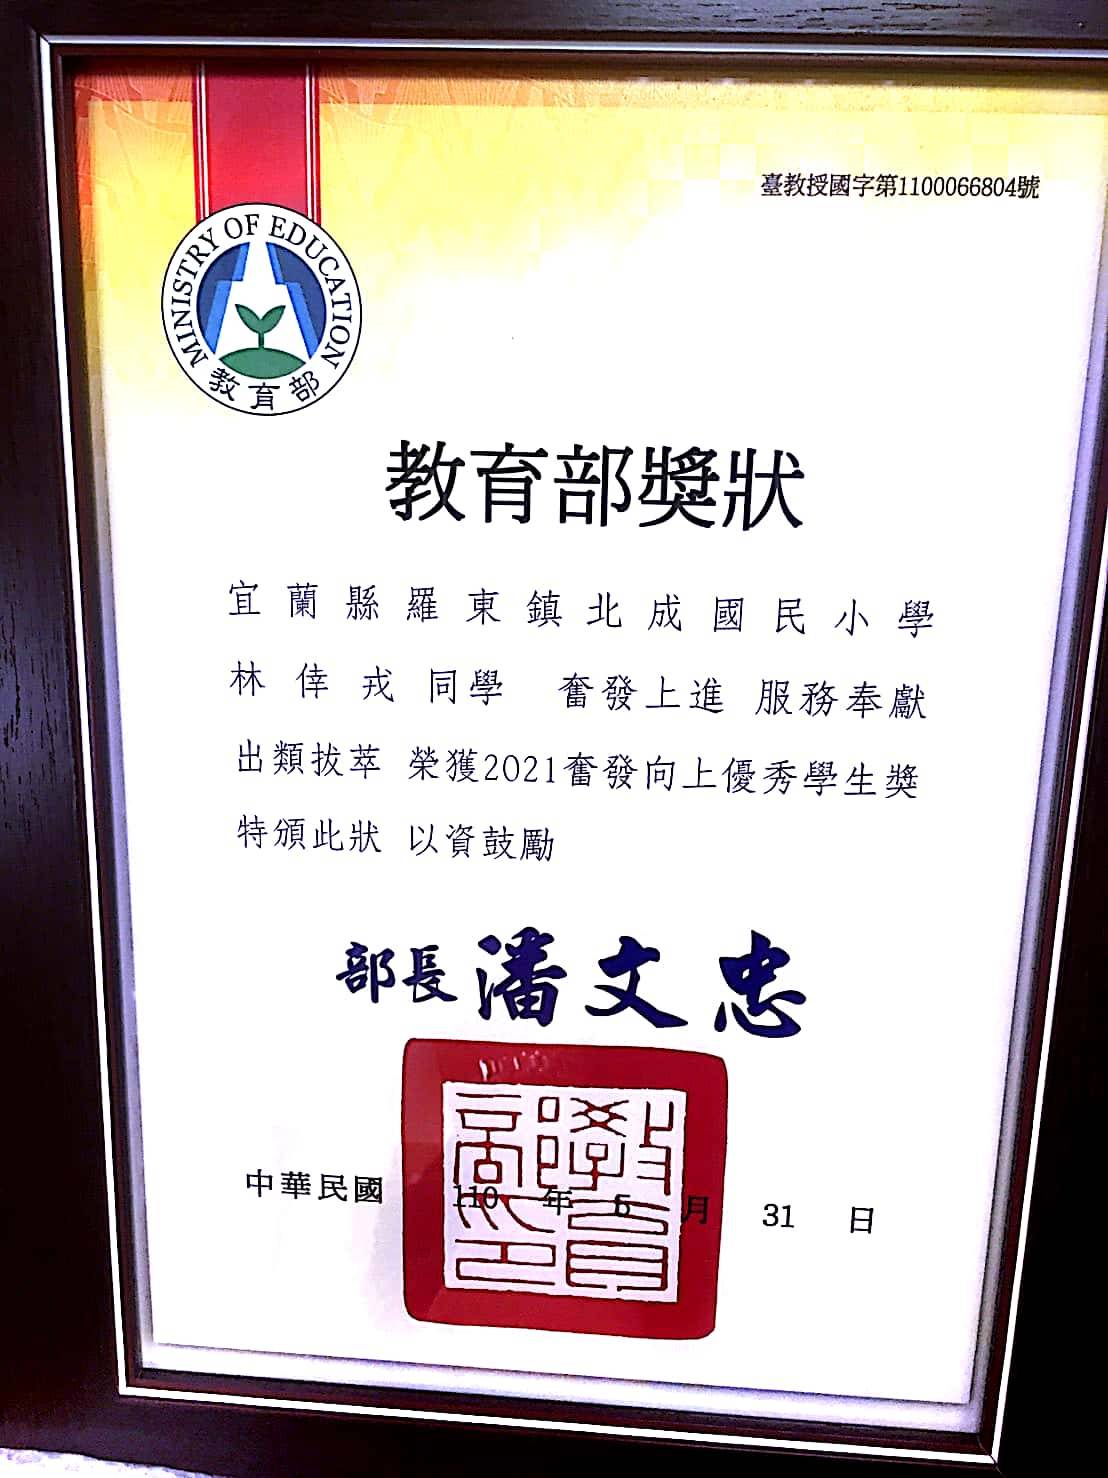 戎妹獲得2021總統教育獎的奮發向上獎(圖/林紫青授權)